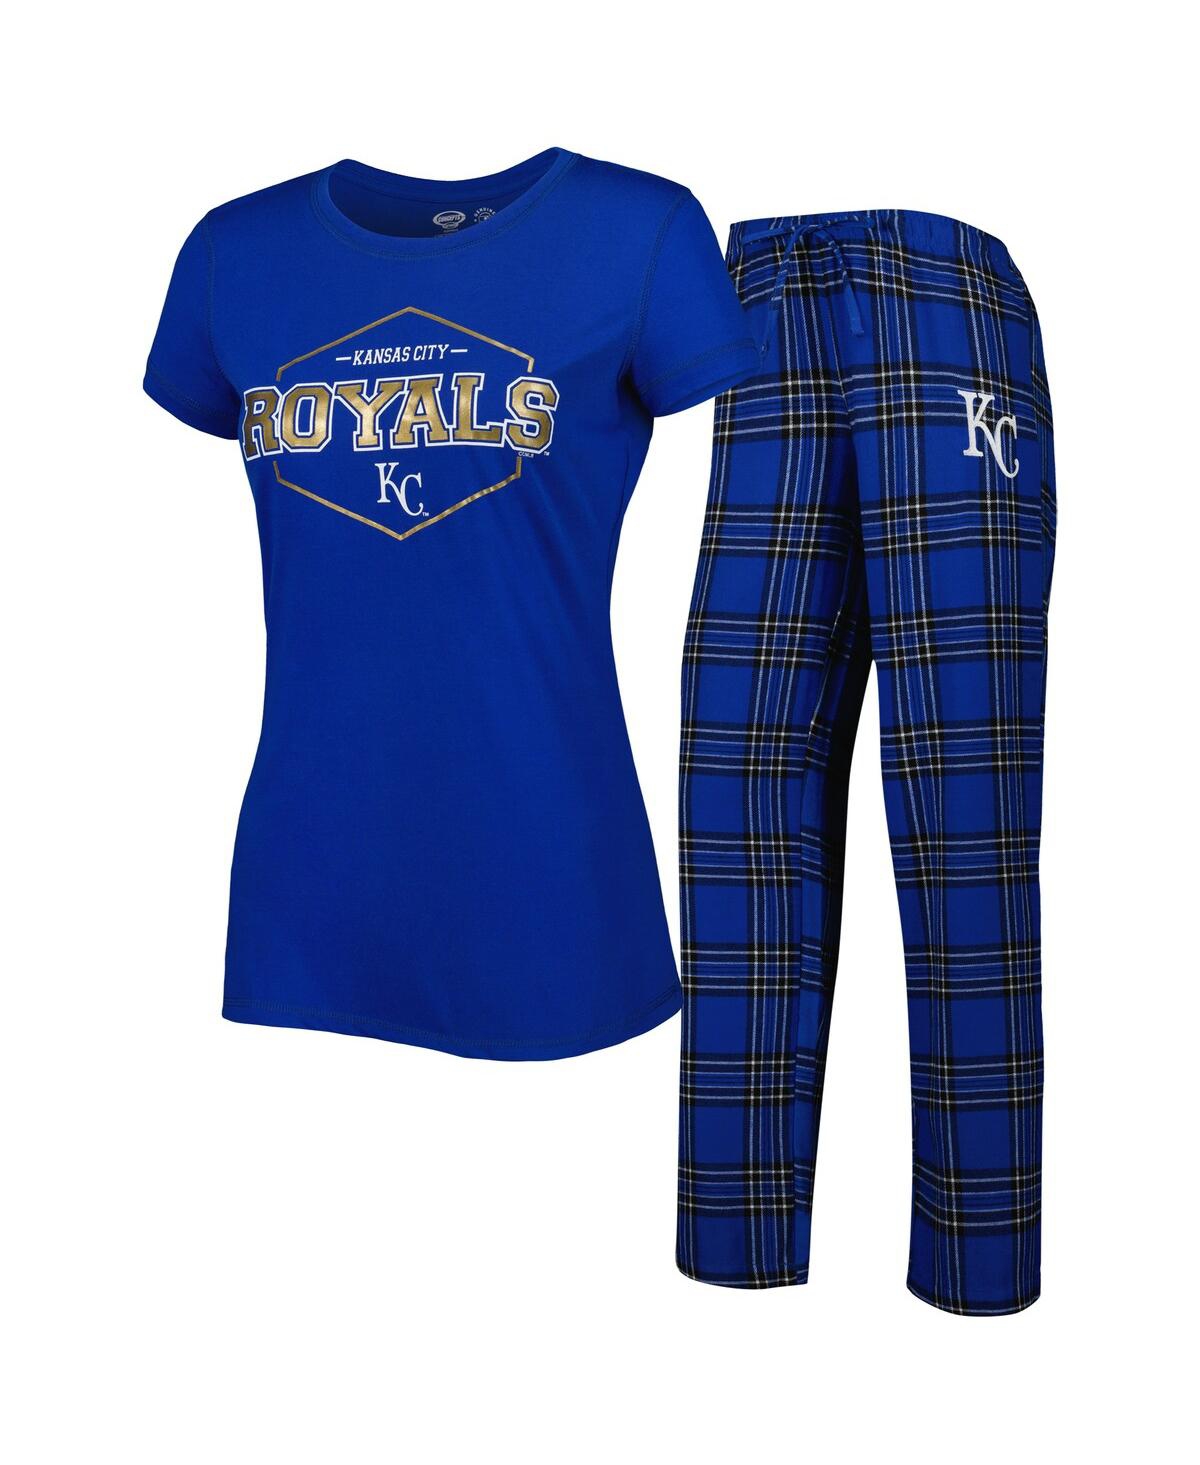 Women's Concepts Sport Royal Kansas City Royals Badge T-shirt and Pajama Pants Sleep Set - Royal